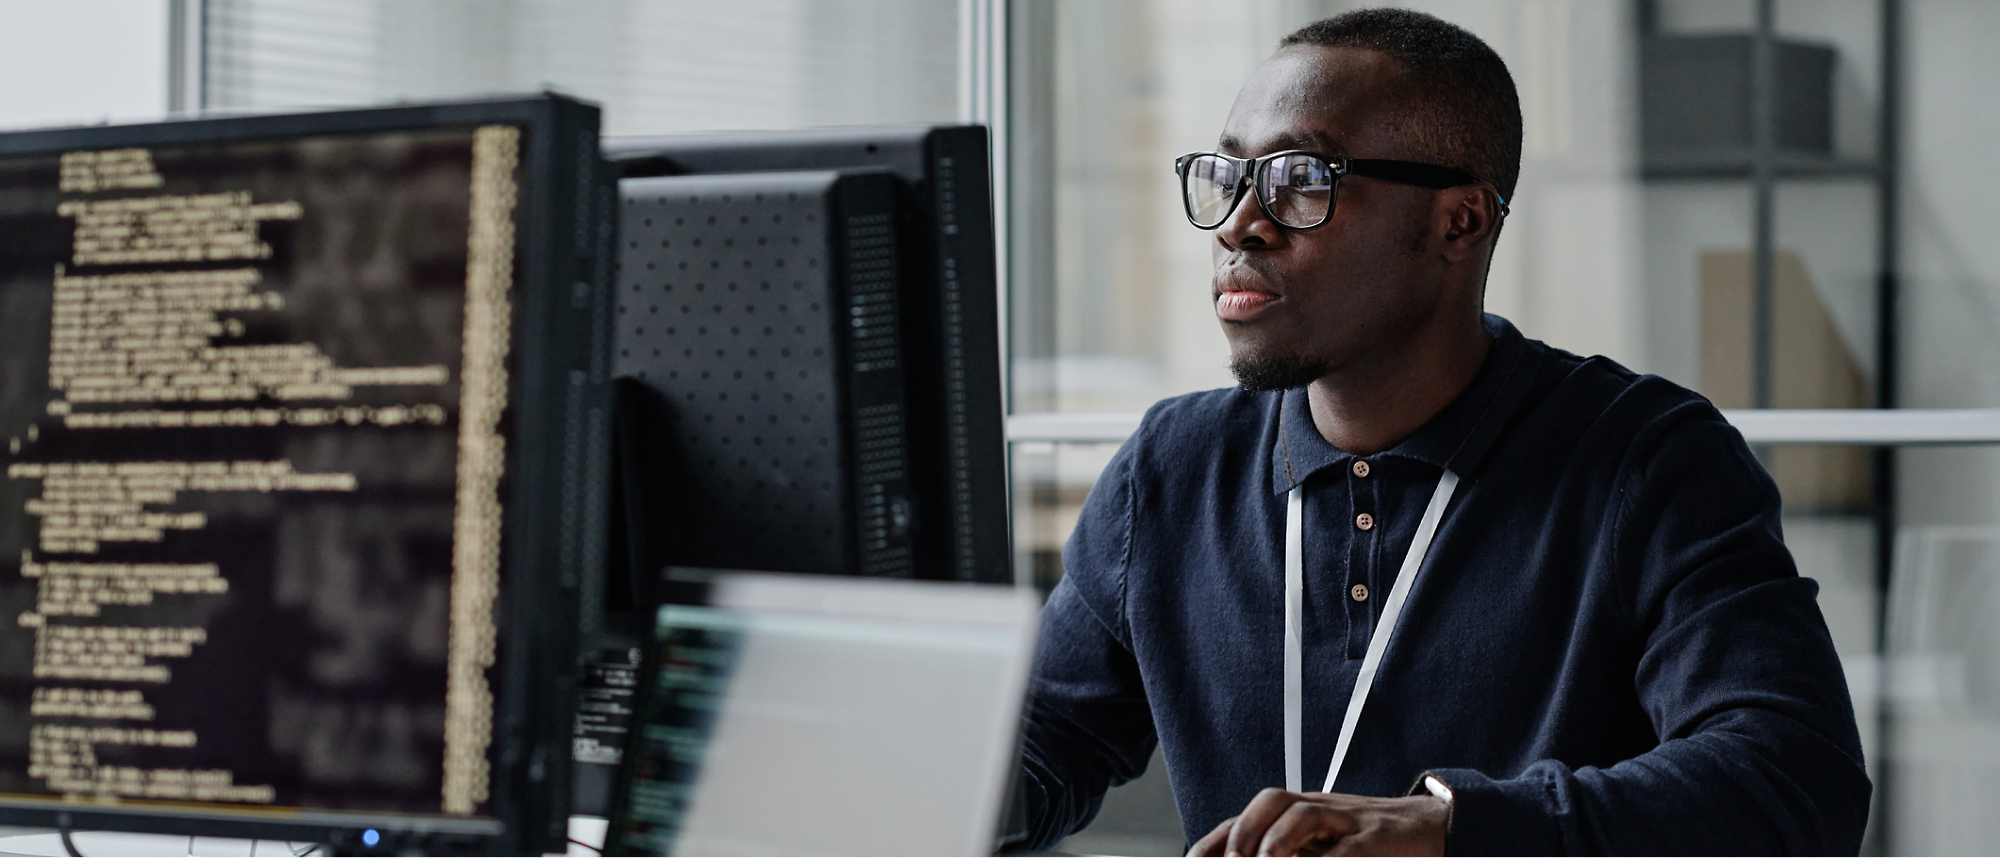 在辦公室場景中，一名戴眼鏡和穿深色襯衫的男士使用電腦工作，螢幕上顯示一行行的程式碼。